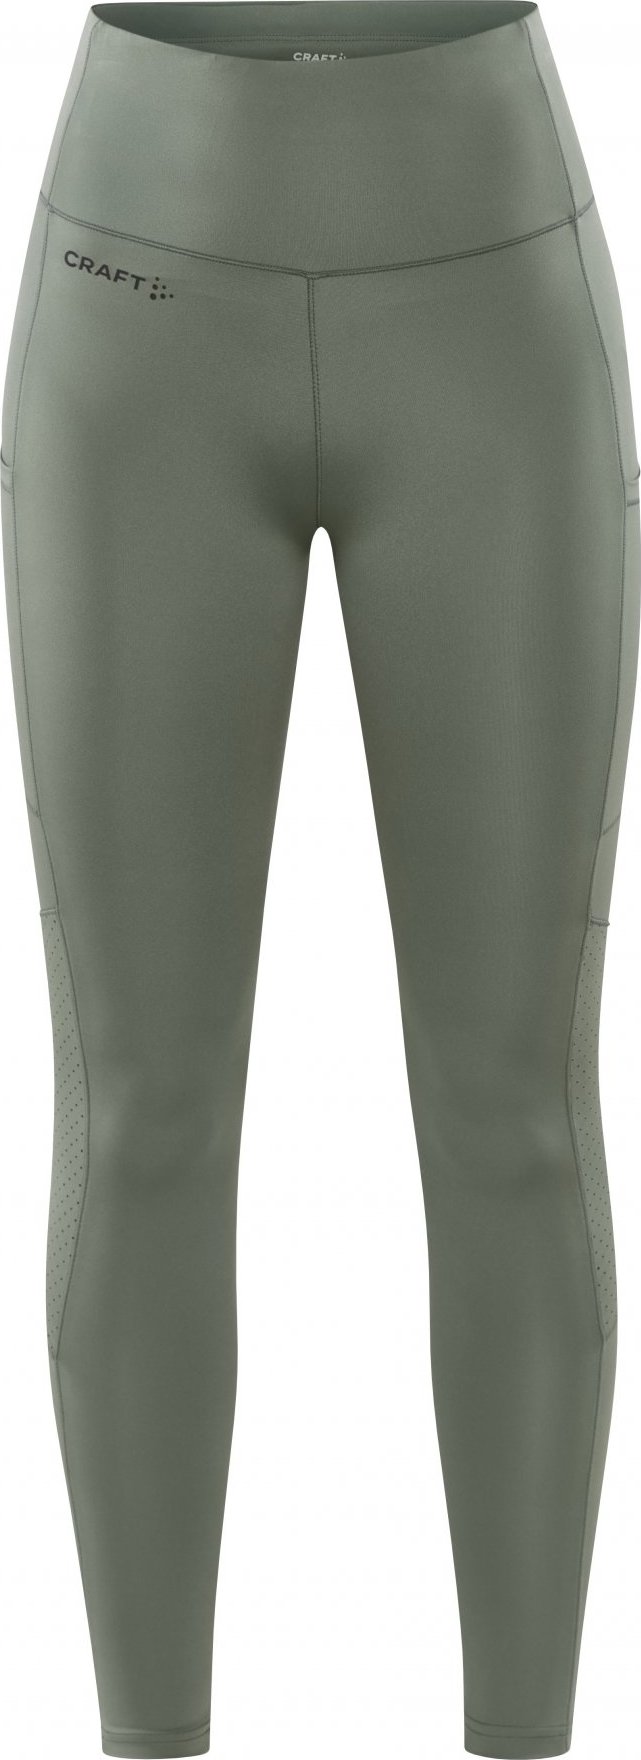 Dámské elastické kalhoty CRAFT Adv Essence 2 zelené Velikost: M